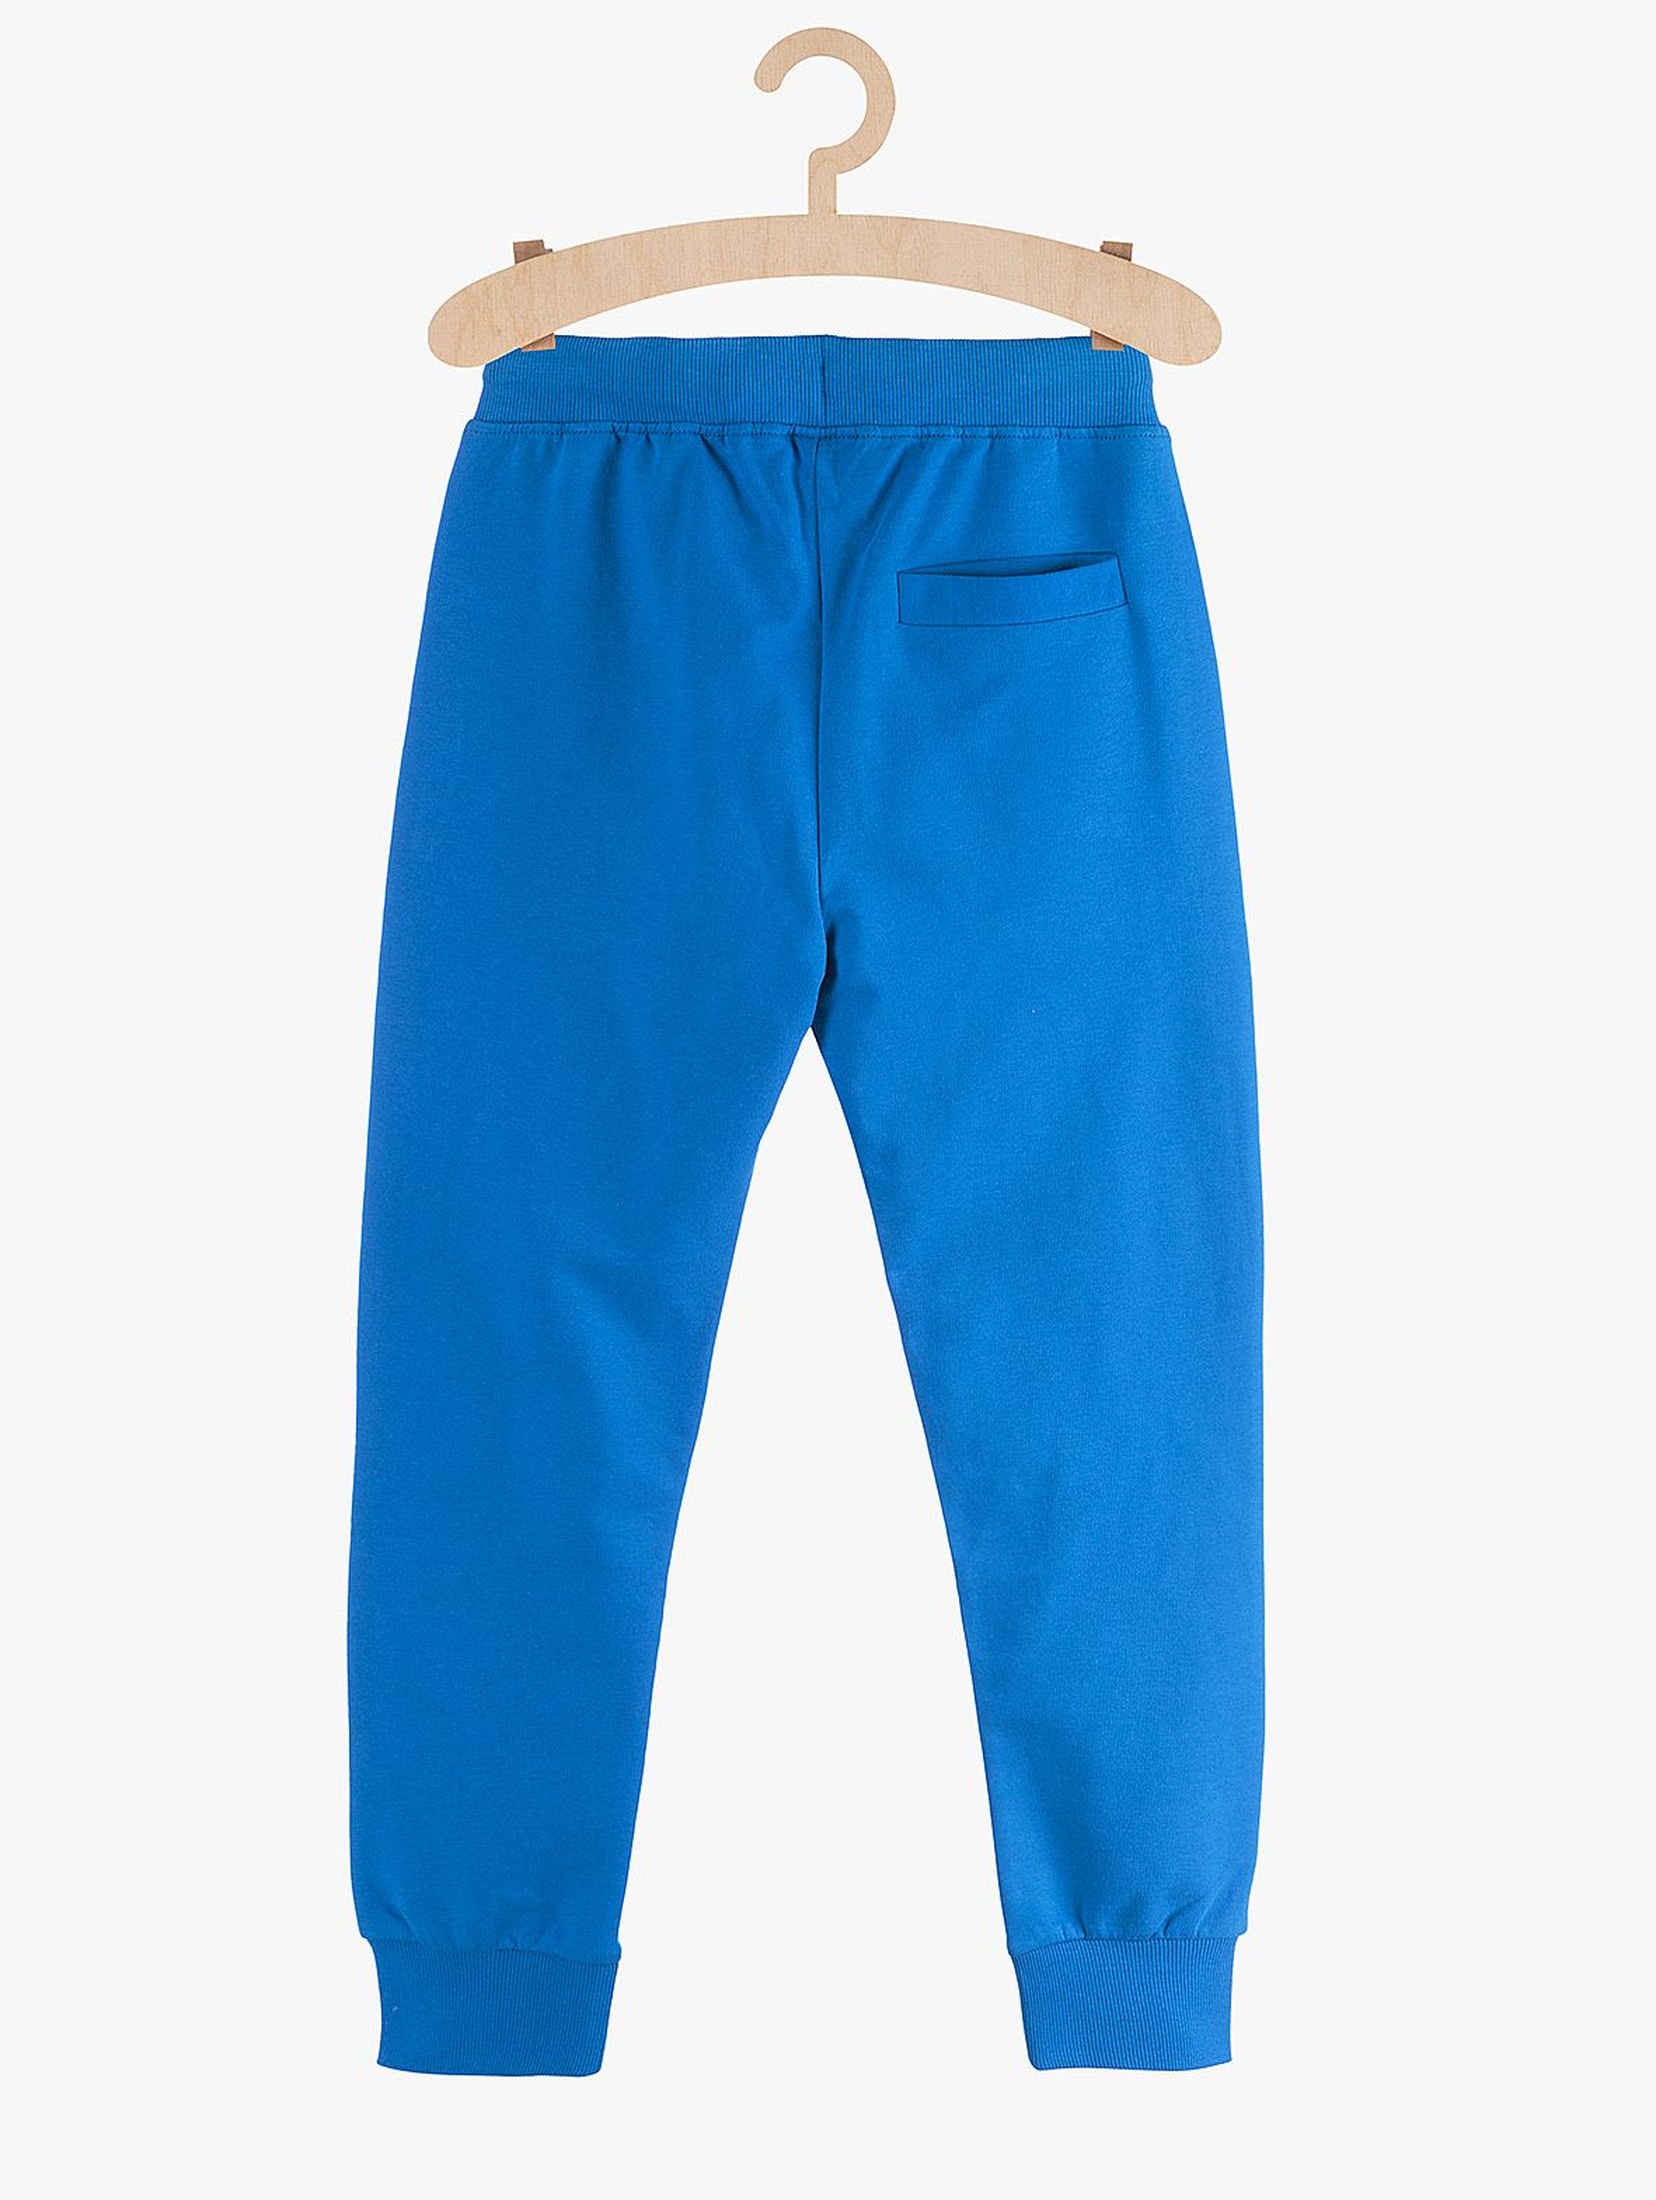 Spodnie chłopięce dresowe niebieskie z kieszeniami